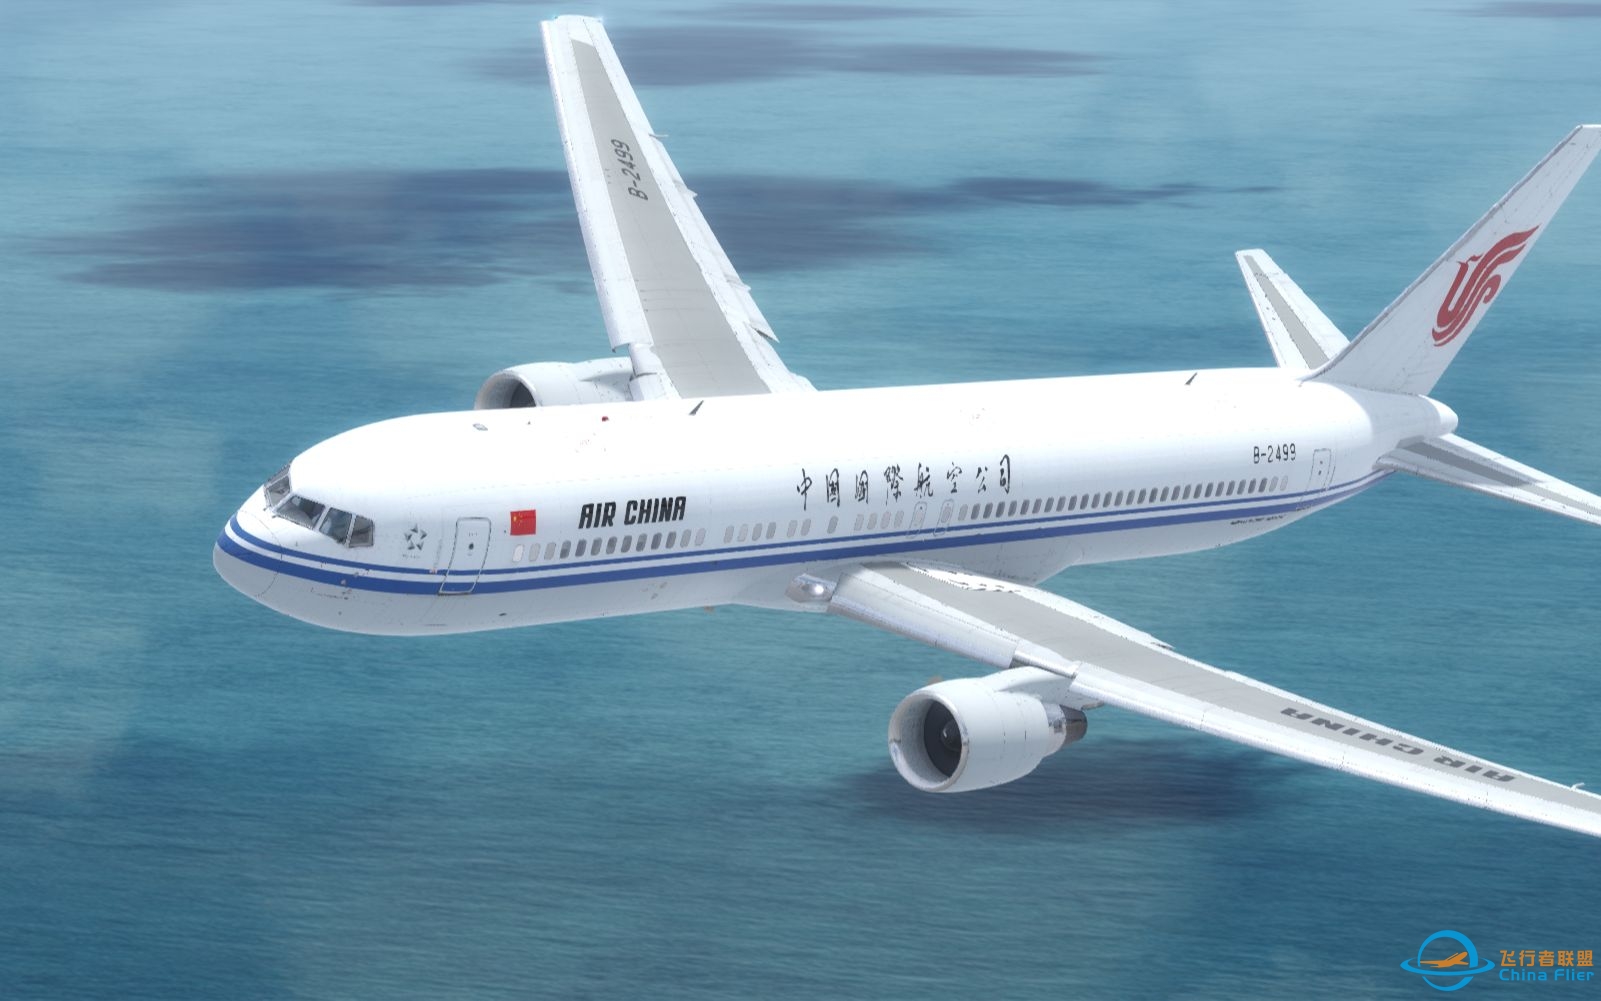 【Prepar3D落地】中国国际航空波音767-300ER落地上海虹桥-3644 